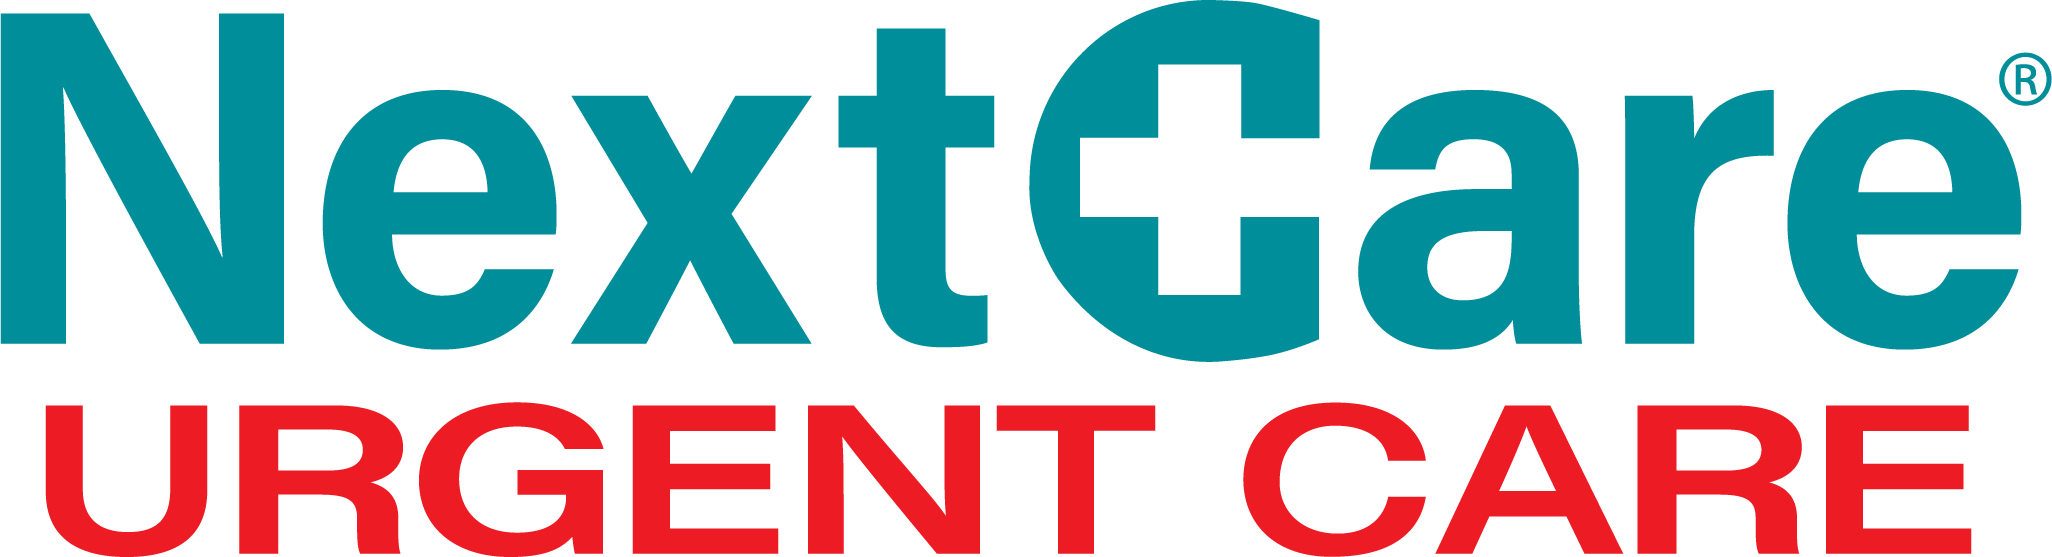 NextCare Urgent Care - North Mesa Logo